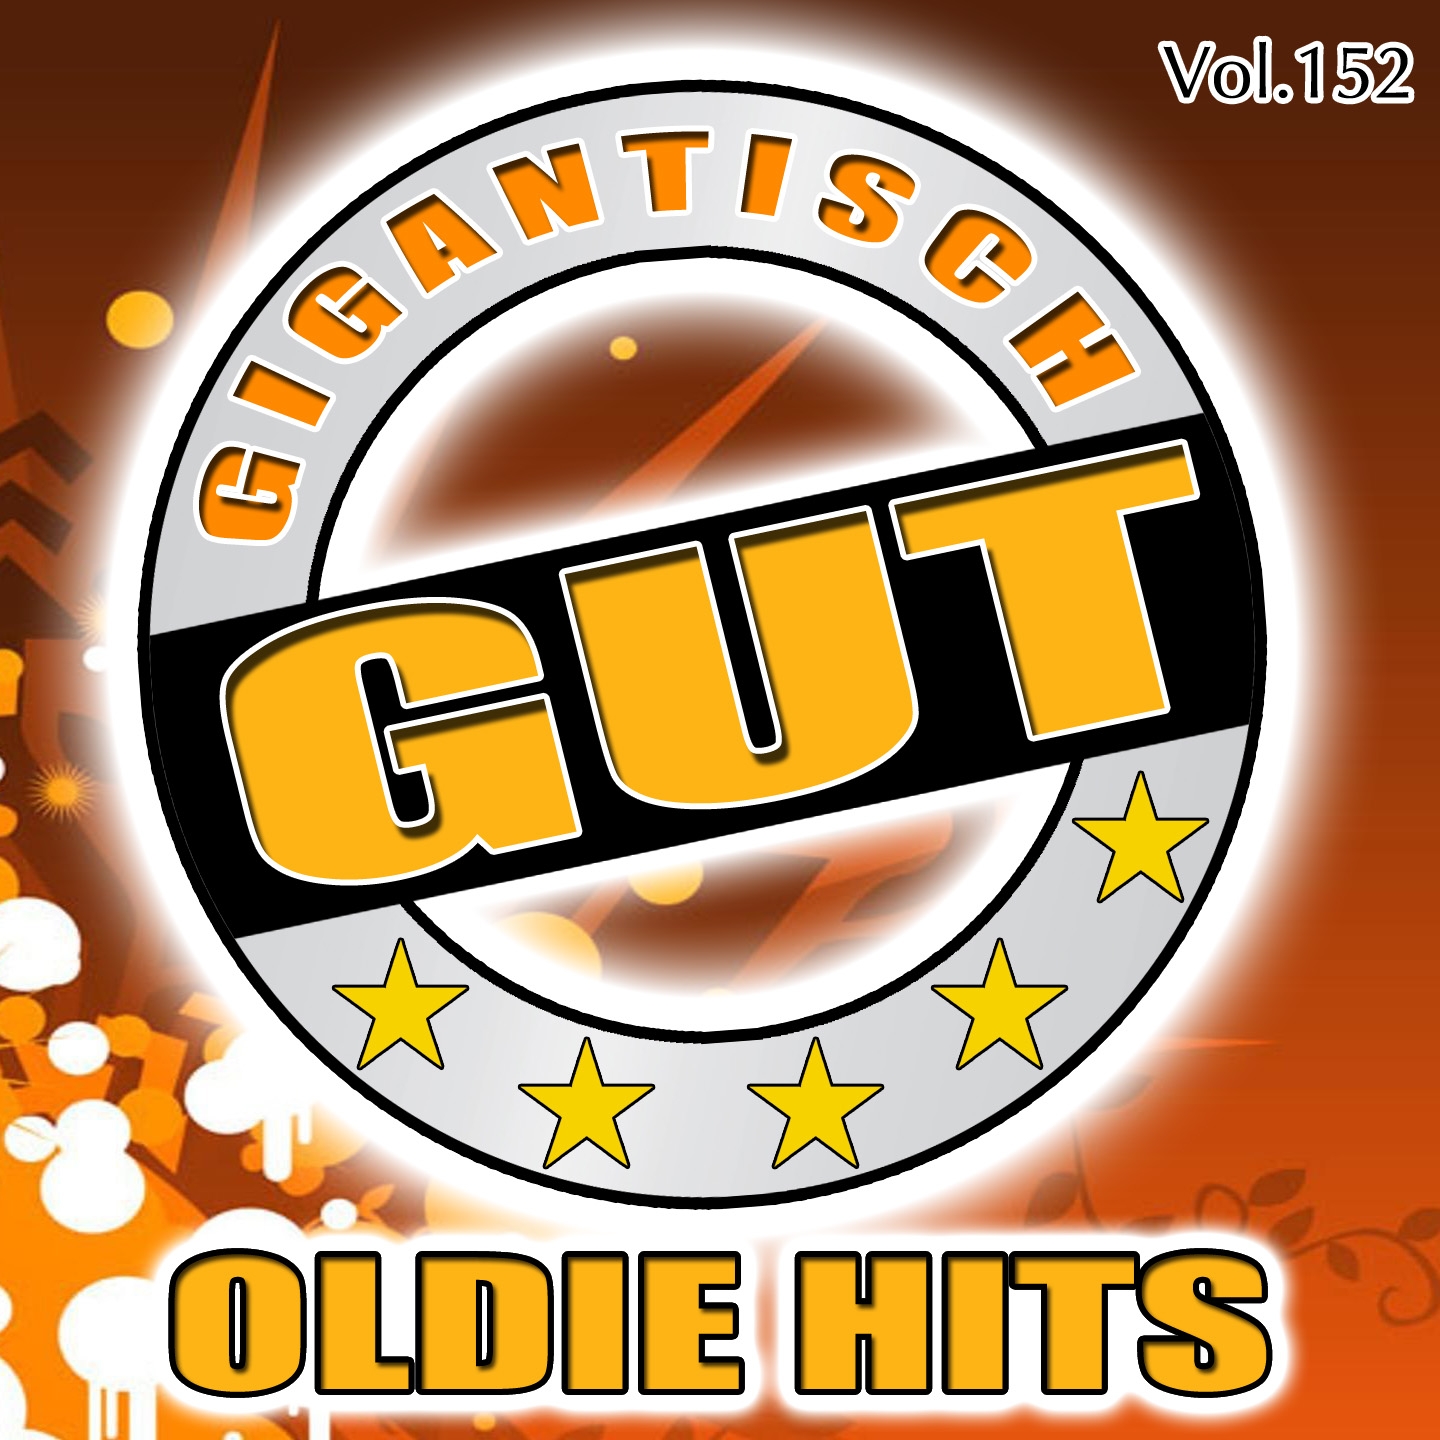 Gigantisch Gut: Oldie Hits, Vol. 152